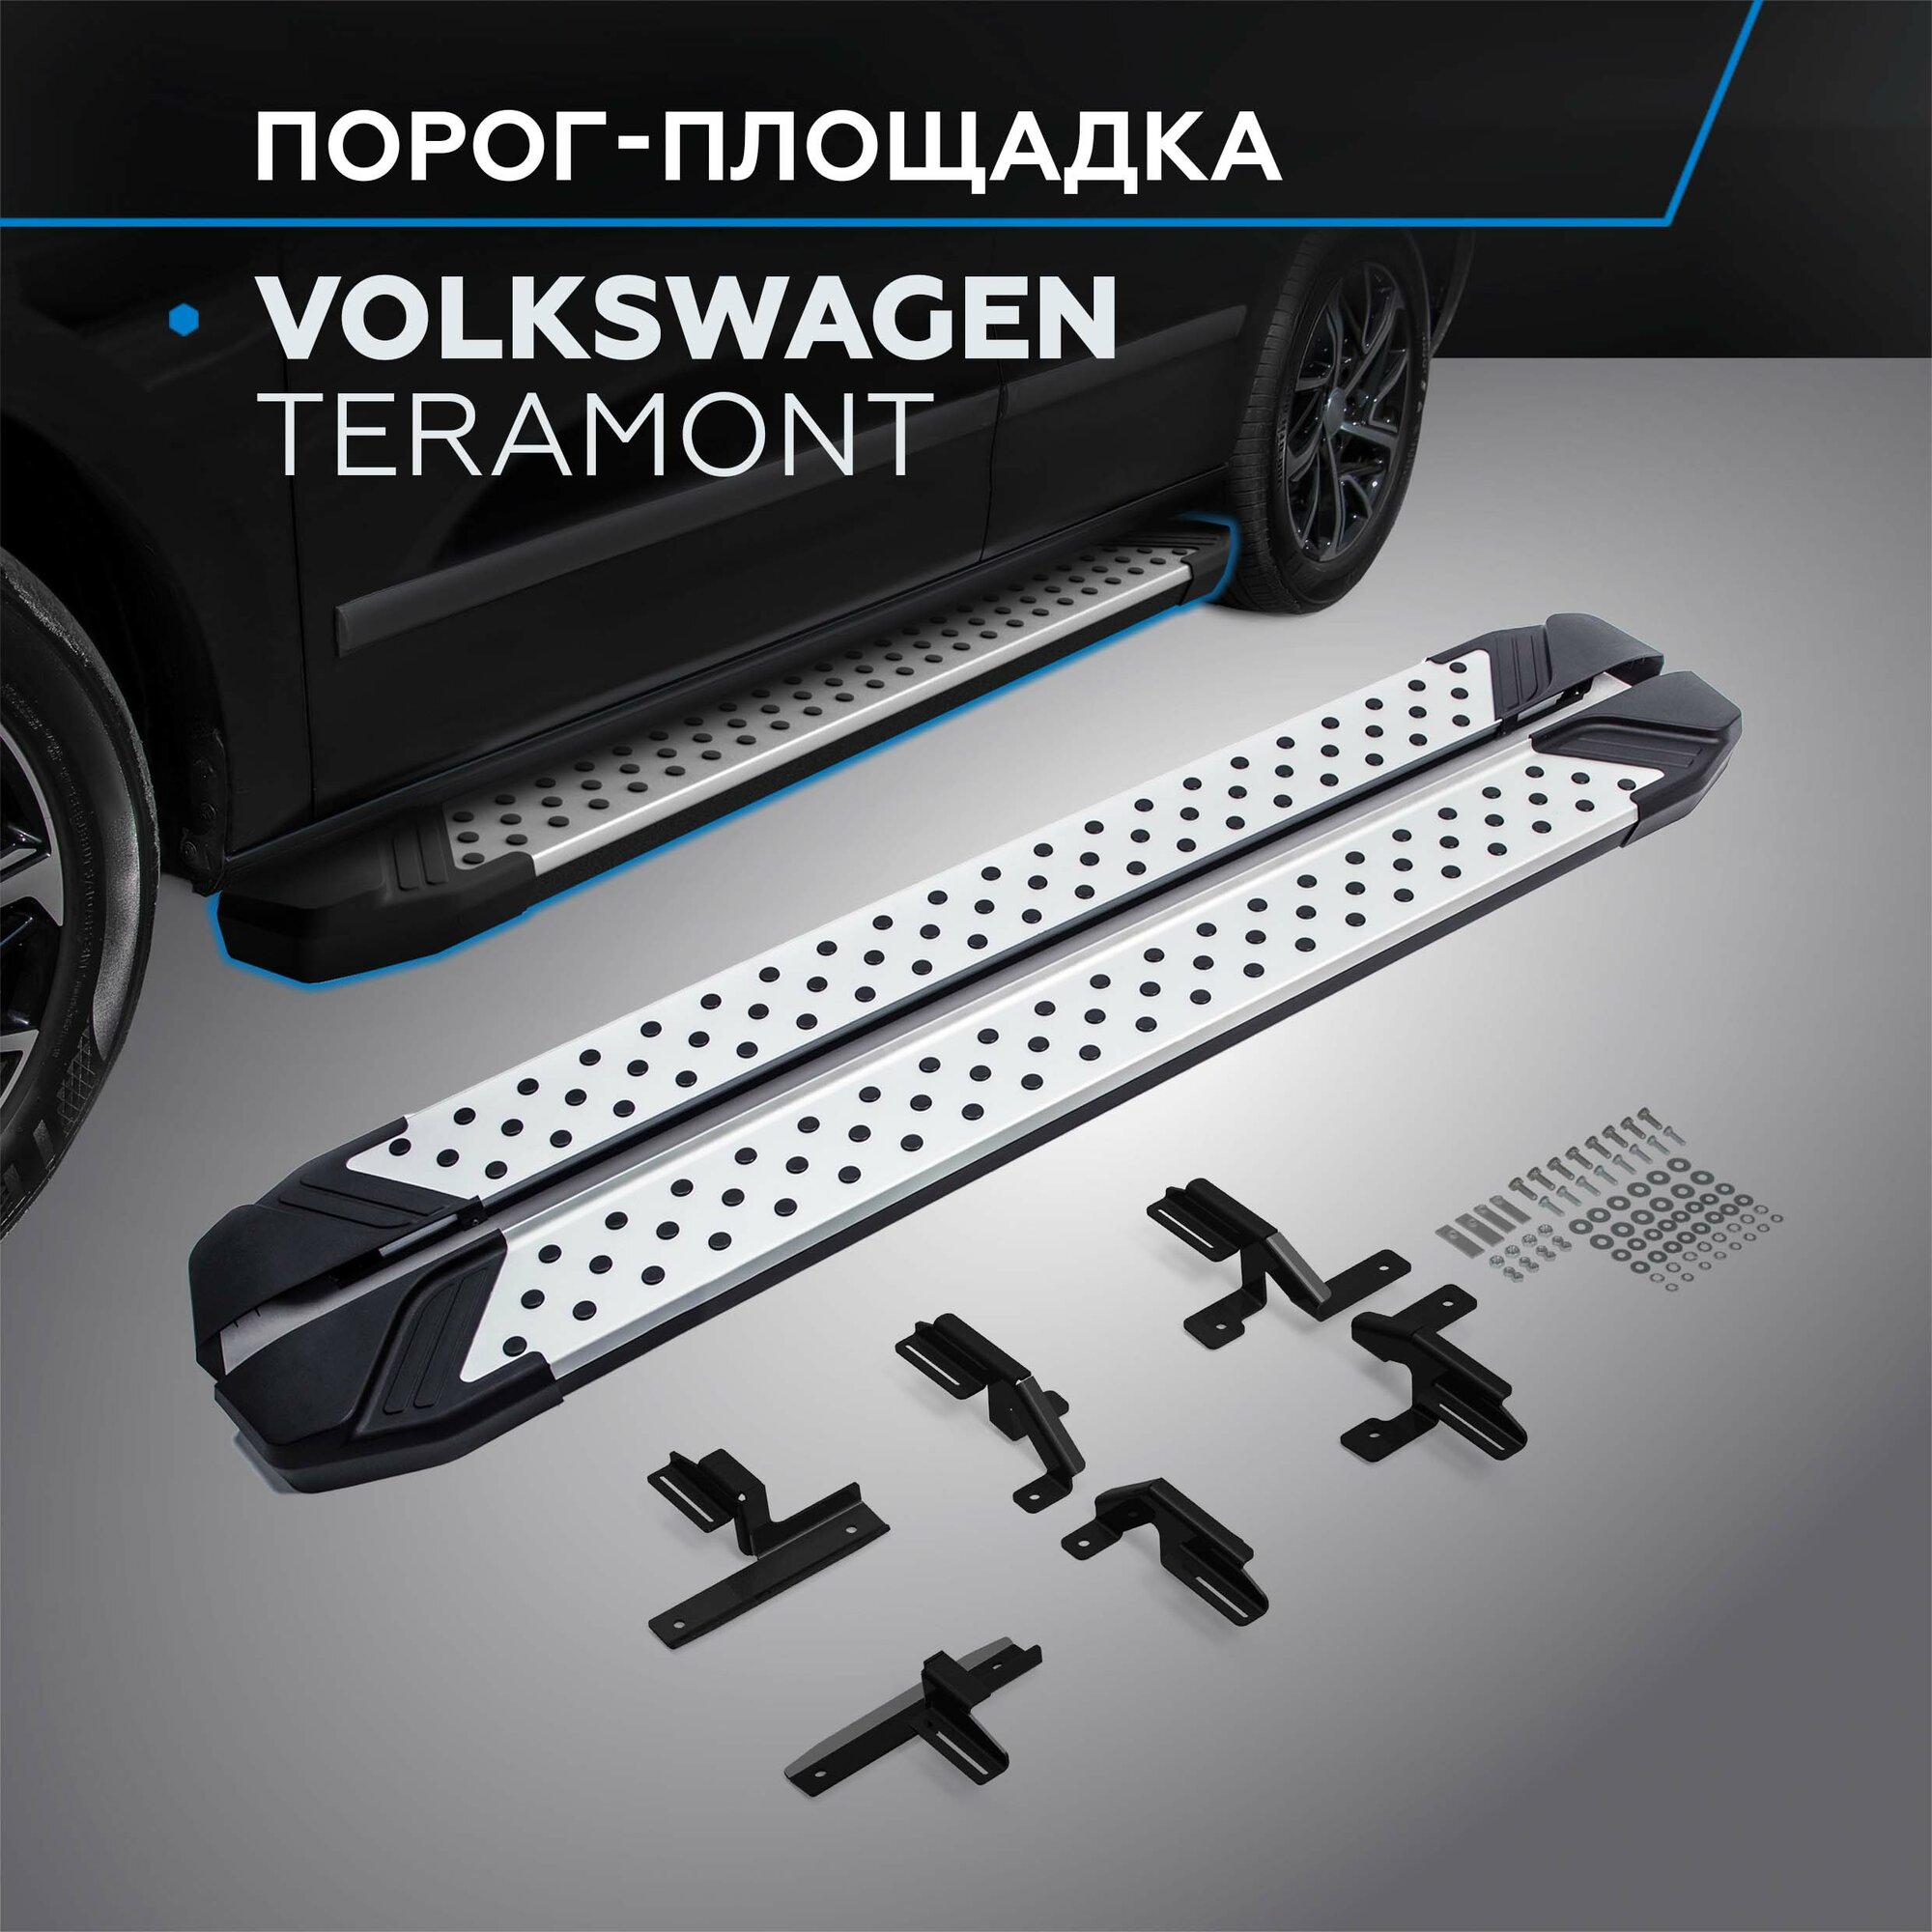 Пороги на автомобиль "Bmw-Style круг" Rival для Volkswagen Teramont 2017-2020 193 см 2 шт алюминий D193AL.5805.1